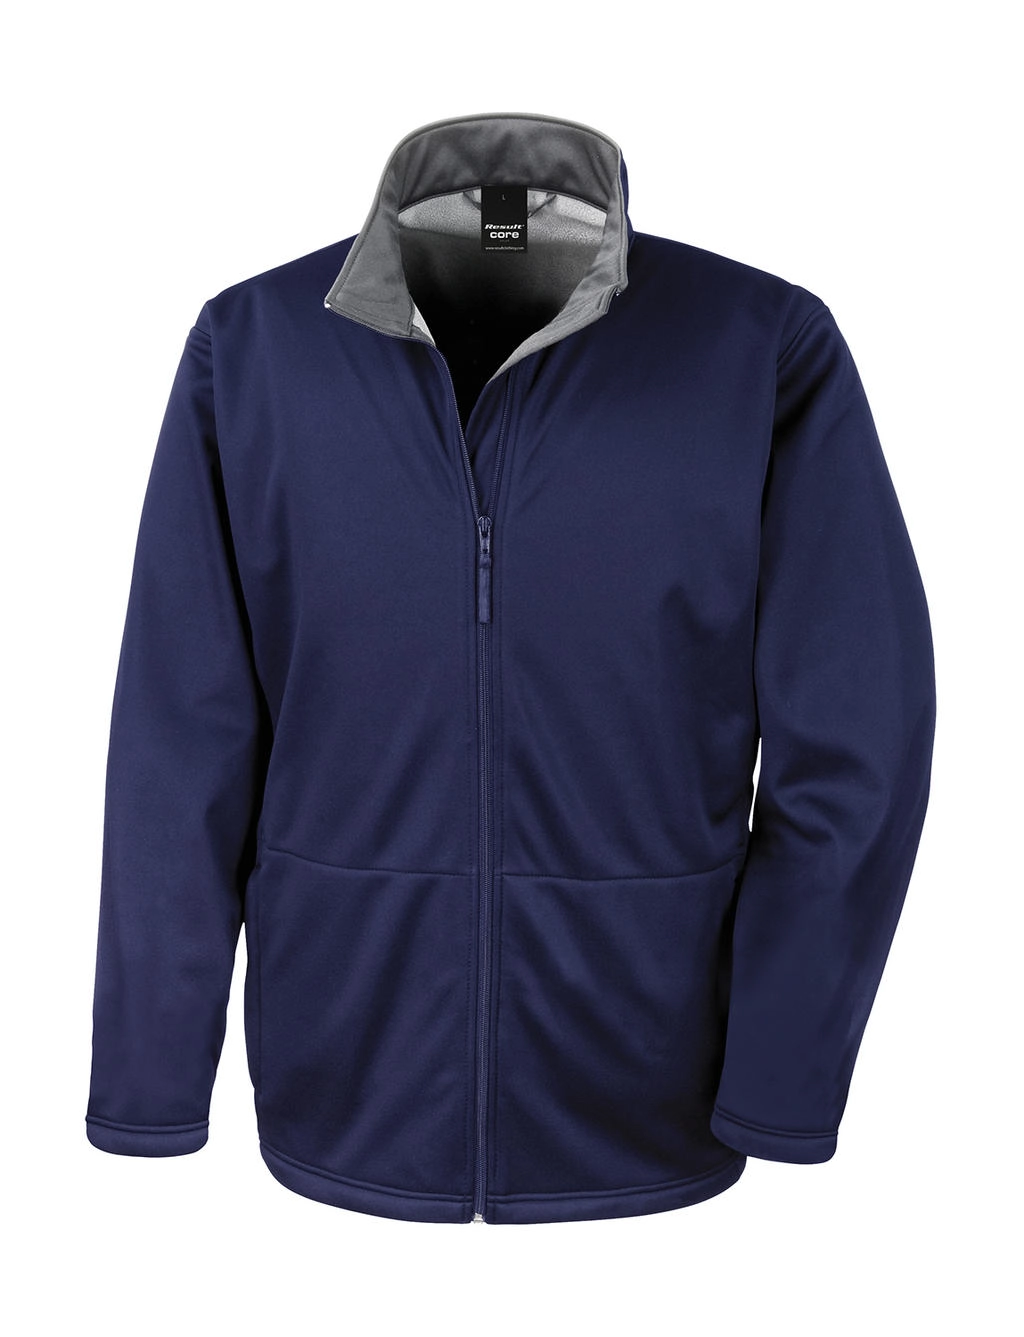 Core Softshell Jacket zum Besticken und Bedrucken in der Farbe Navy mit Ihren Logo, Schriftzug oder Motiv.